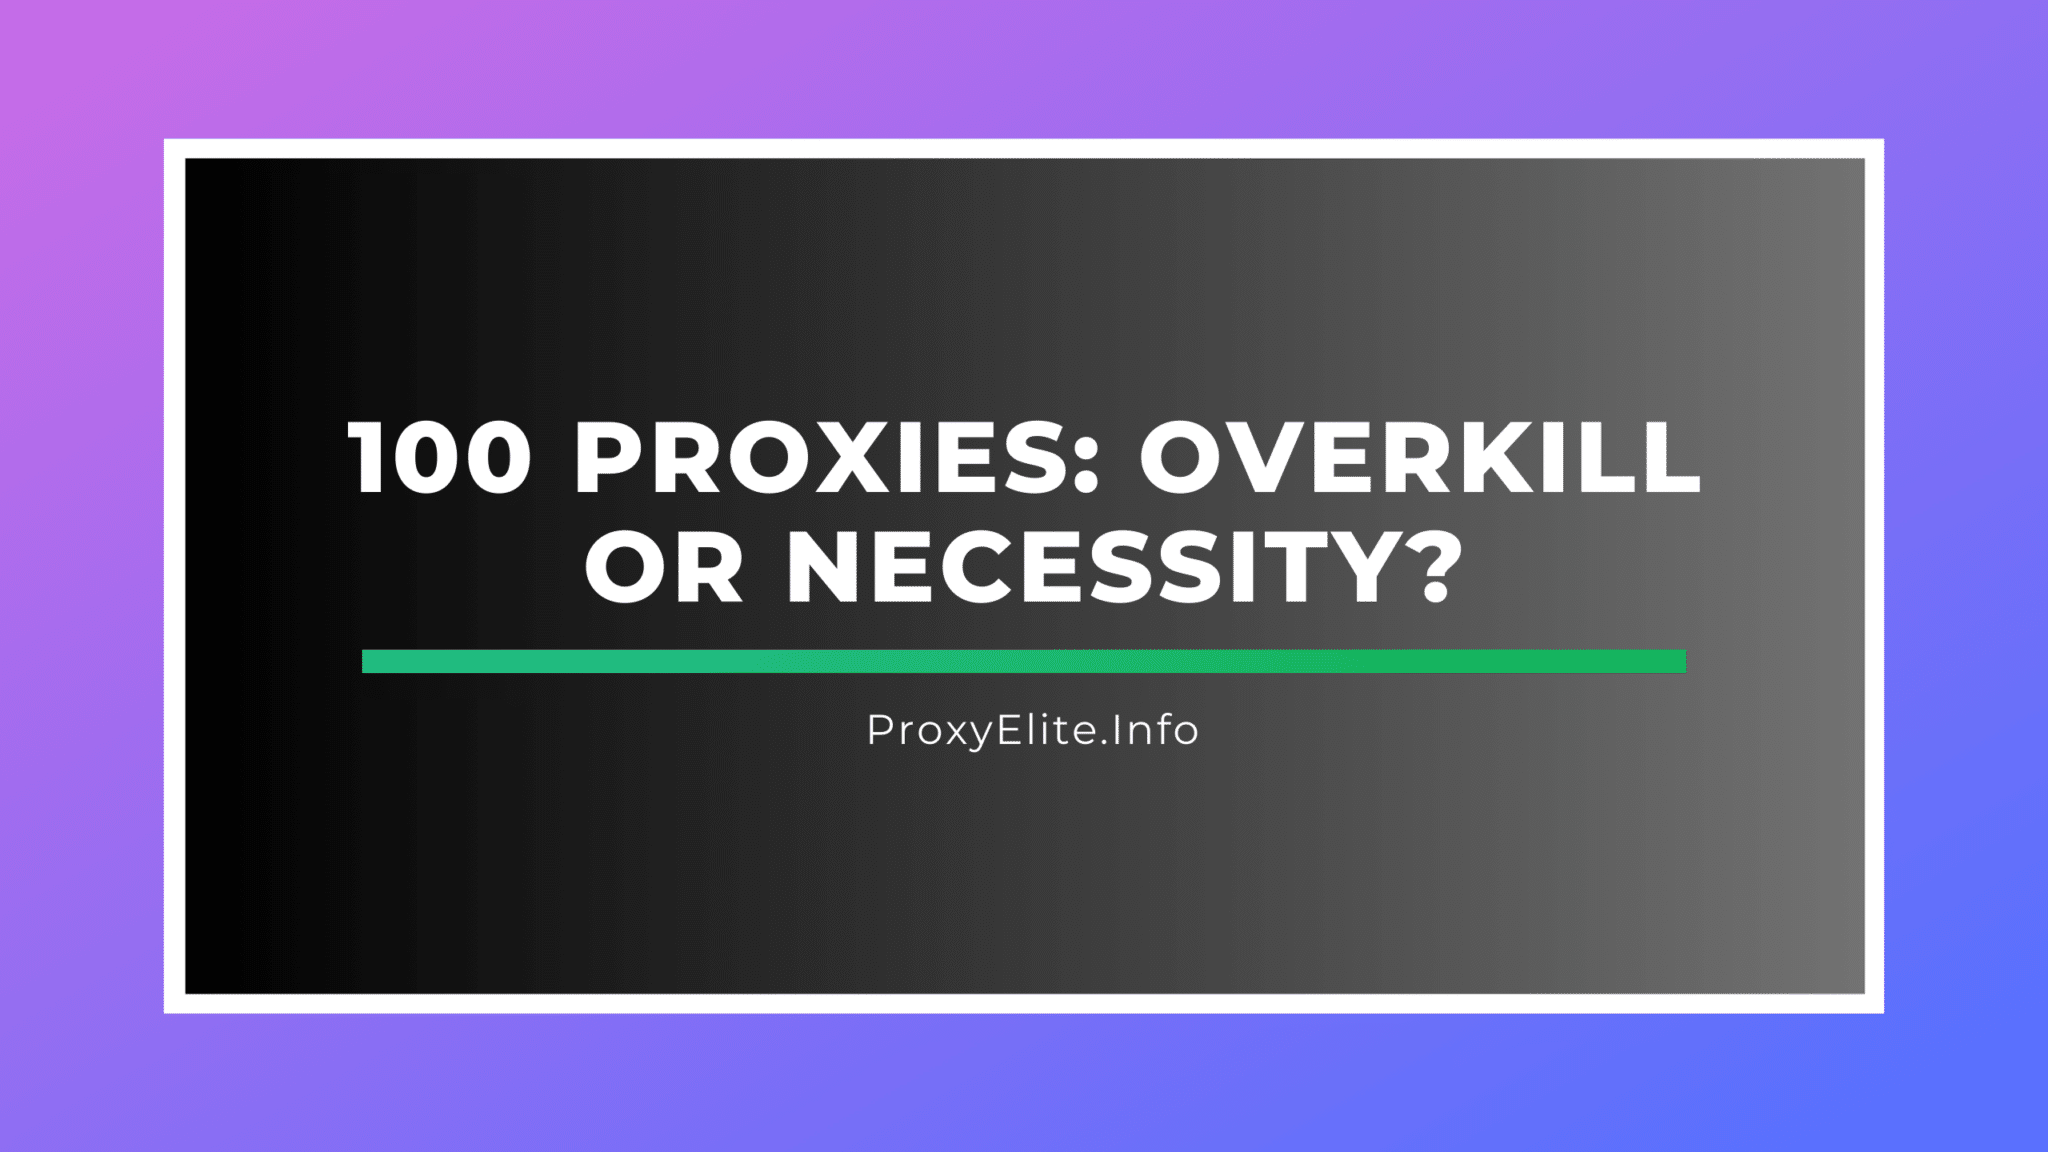 100 proxies: ¿exceso o necesidad?